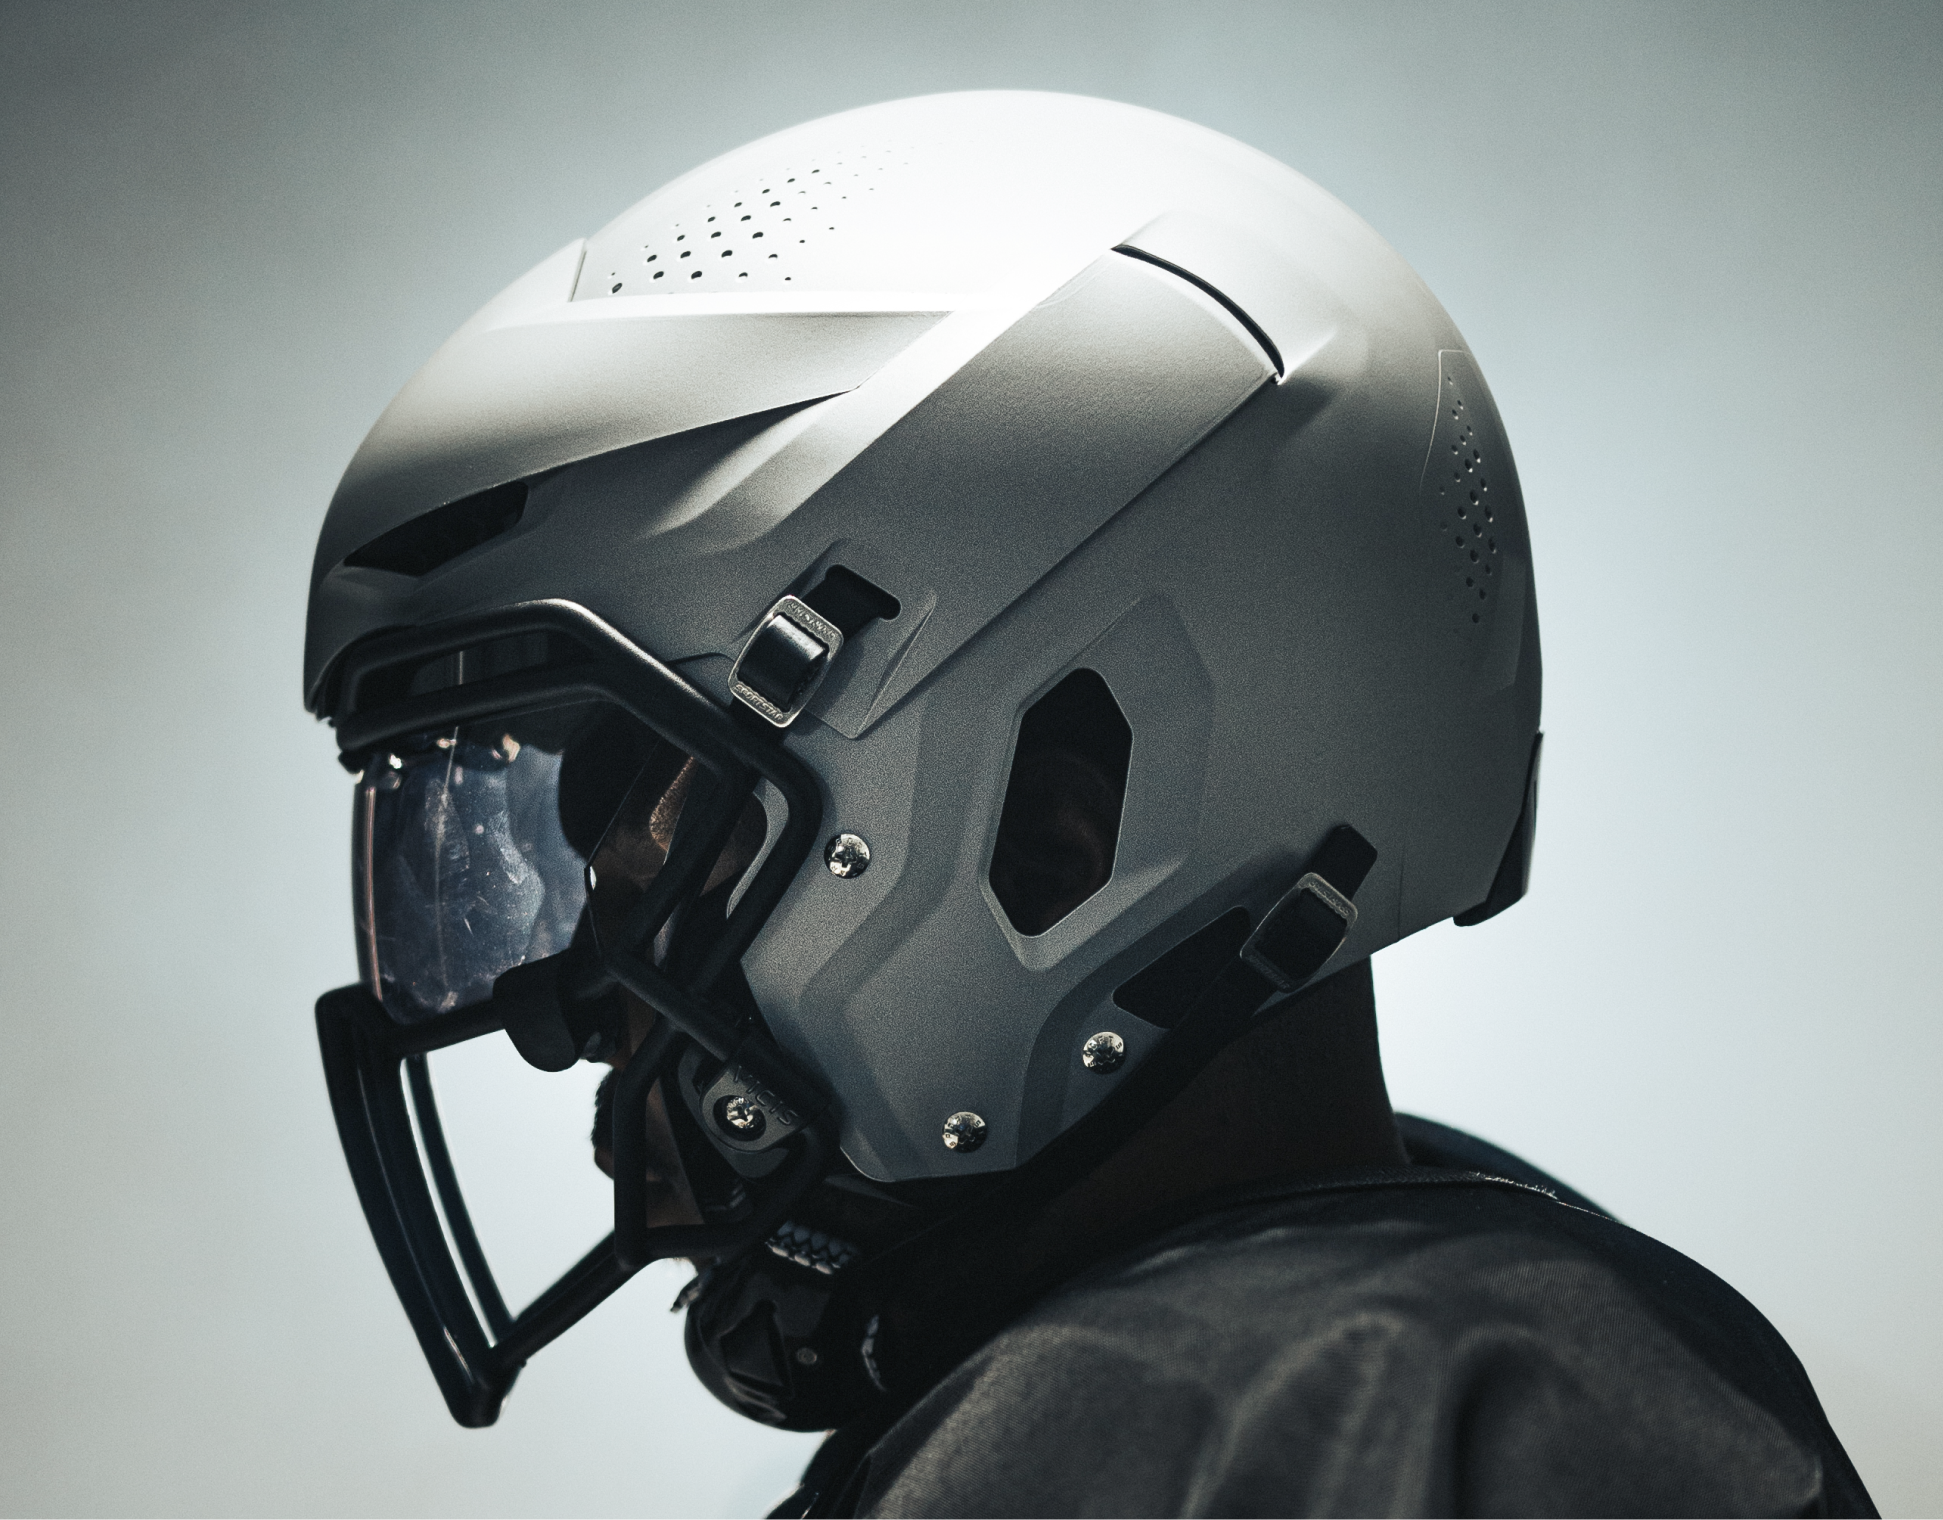 VICIS has top 3 helmets in survey including lineman model